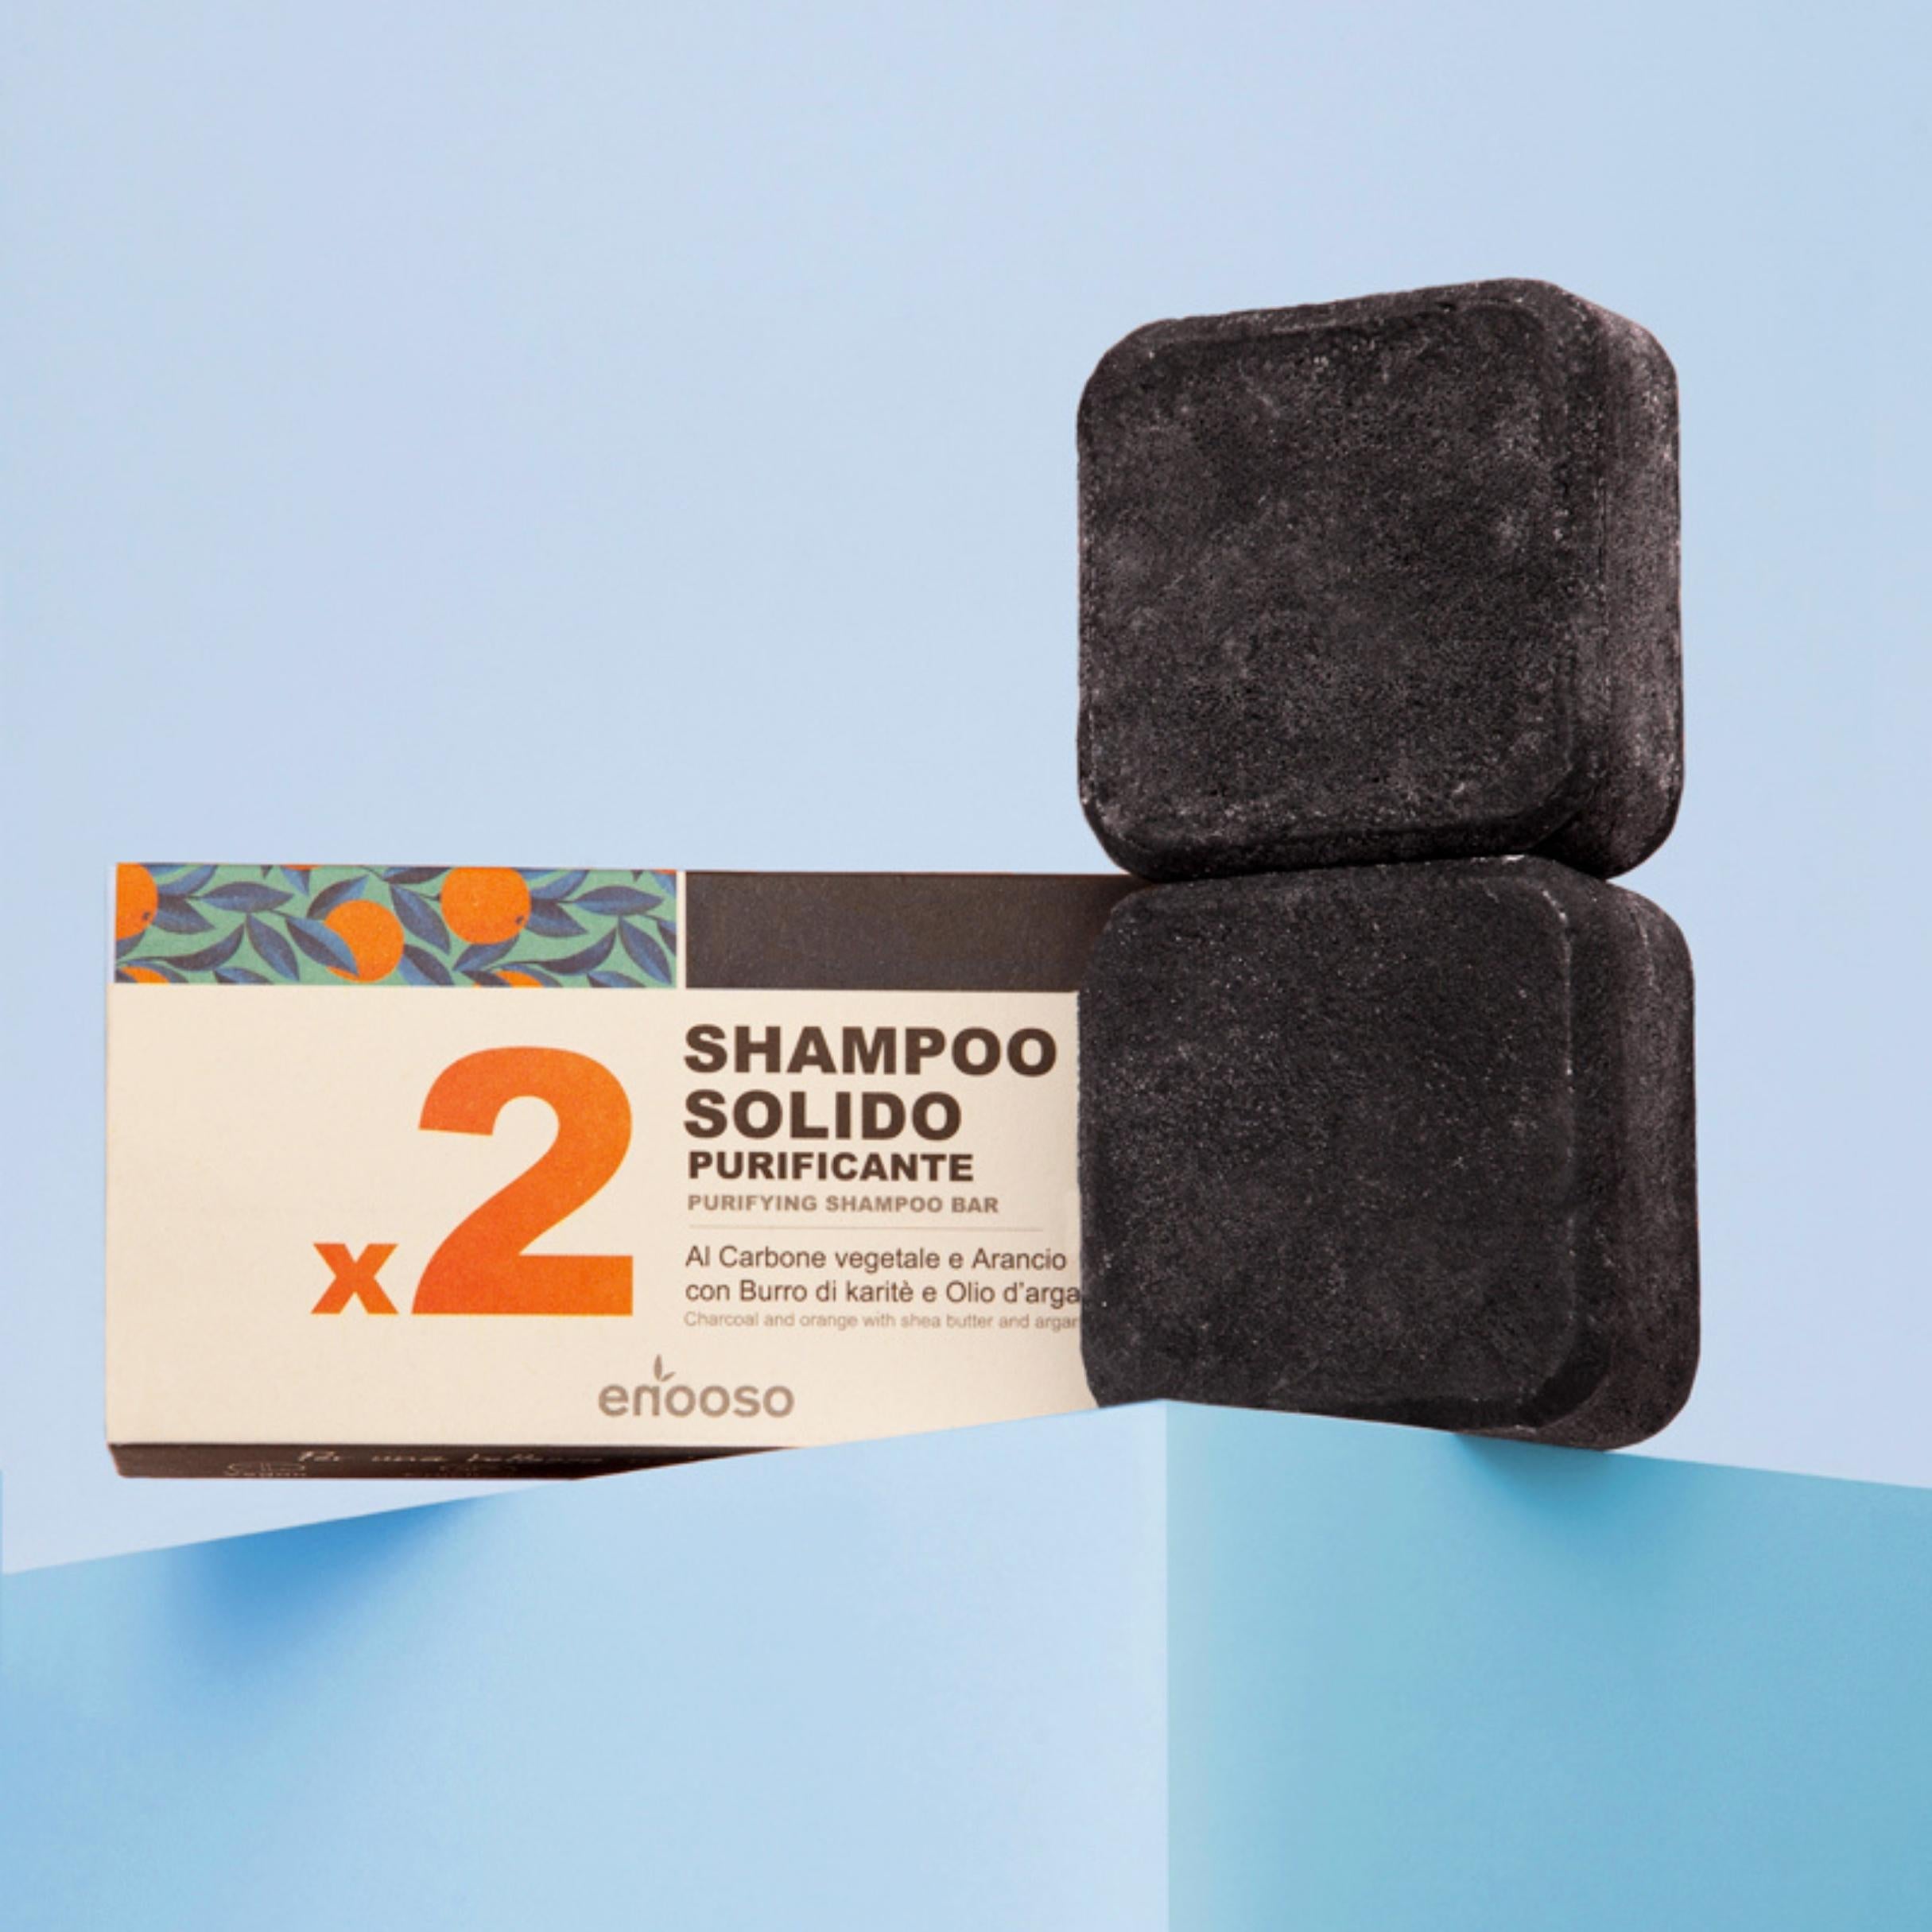 Shampoo Solido Purificante x2 - al carbone vegetale e arancio dolce